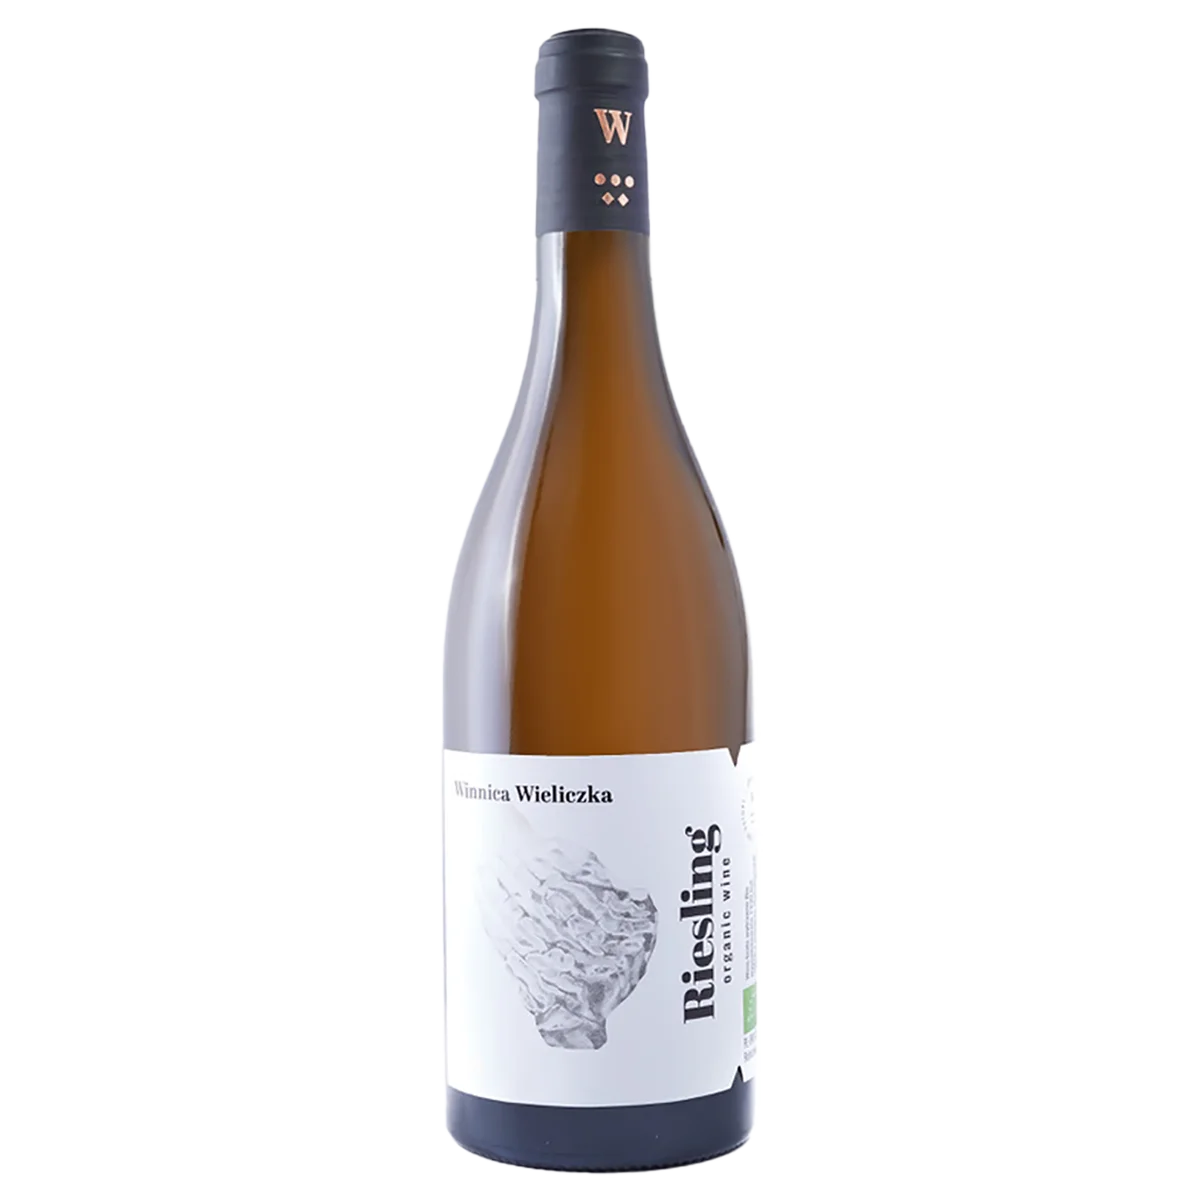 Riesling 2019 - Bio Weißwein trocken aus Polen - Winnice Wieliczka